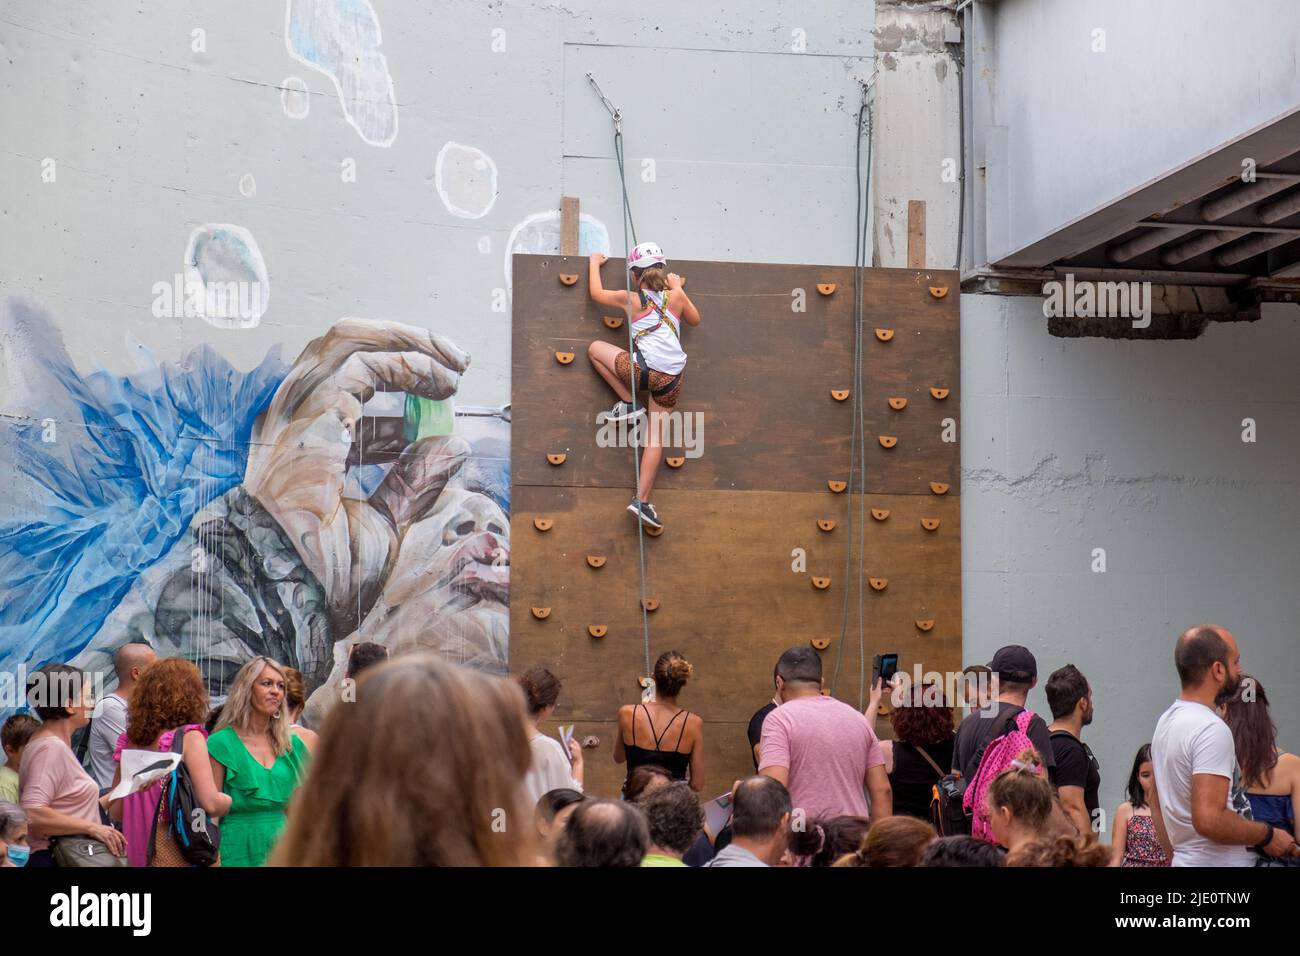 Jeune fille grimpant un mur typé avec une corde pour la sécurité pendant un événement Banque D'Images